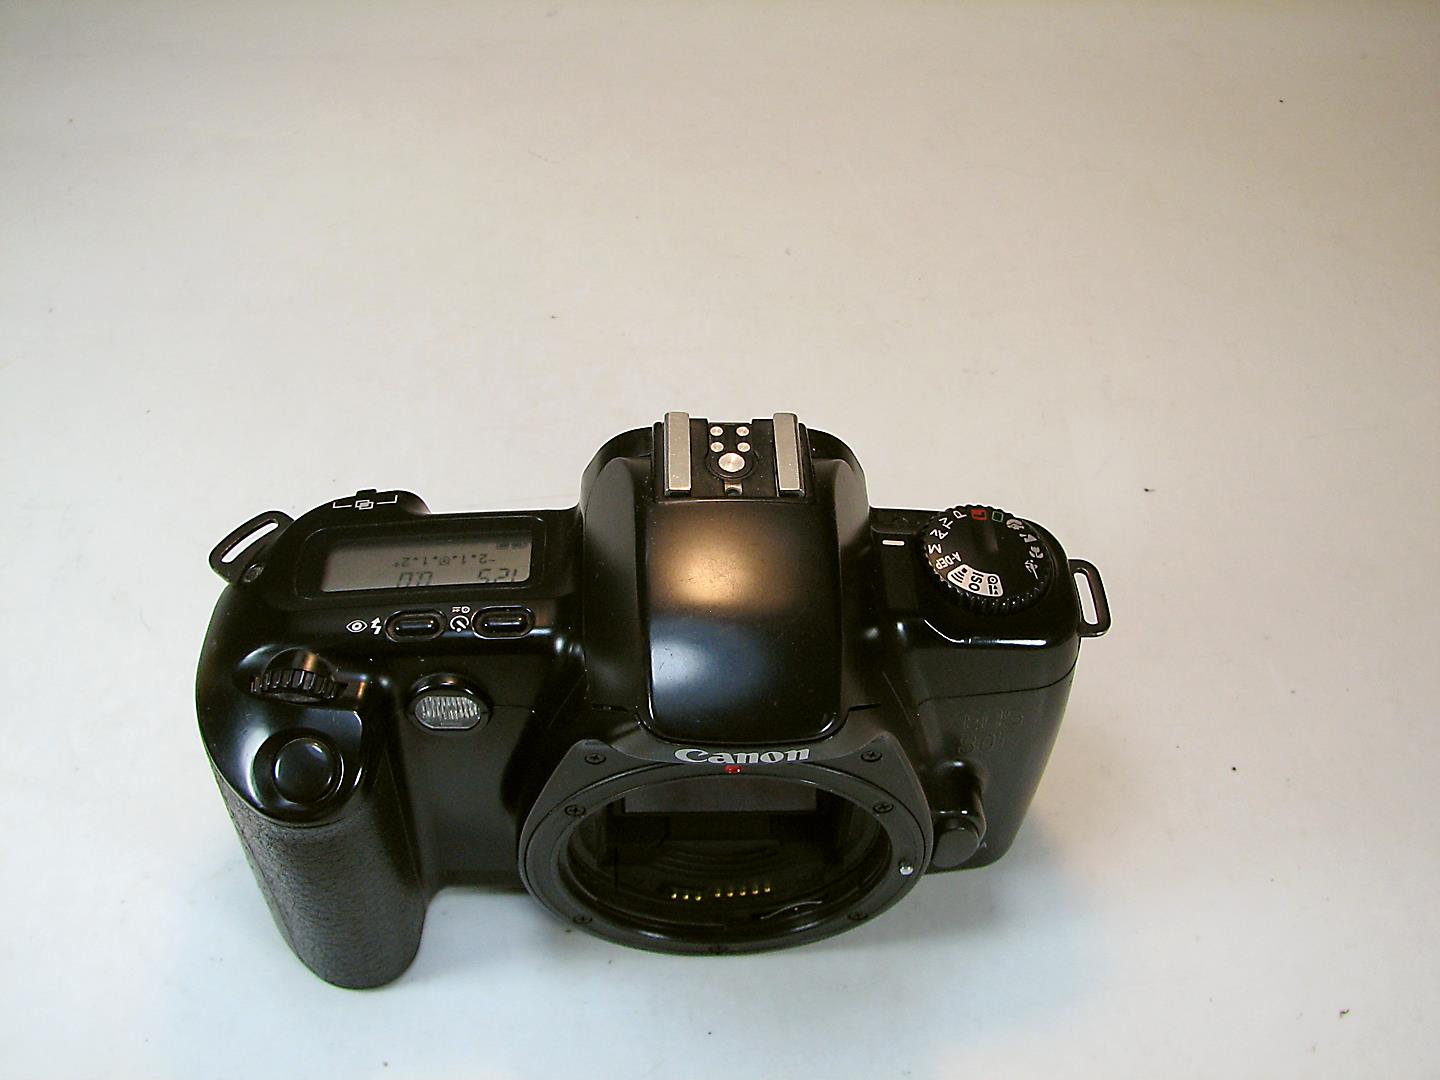 دوربین آنالوگ کانن Canon EOS80D Panorama